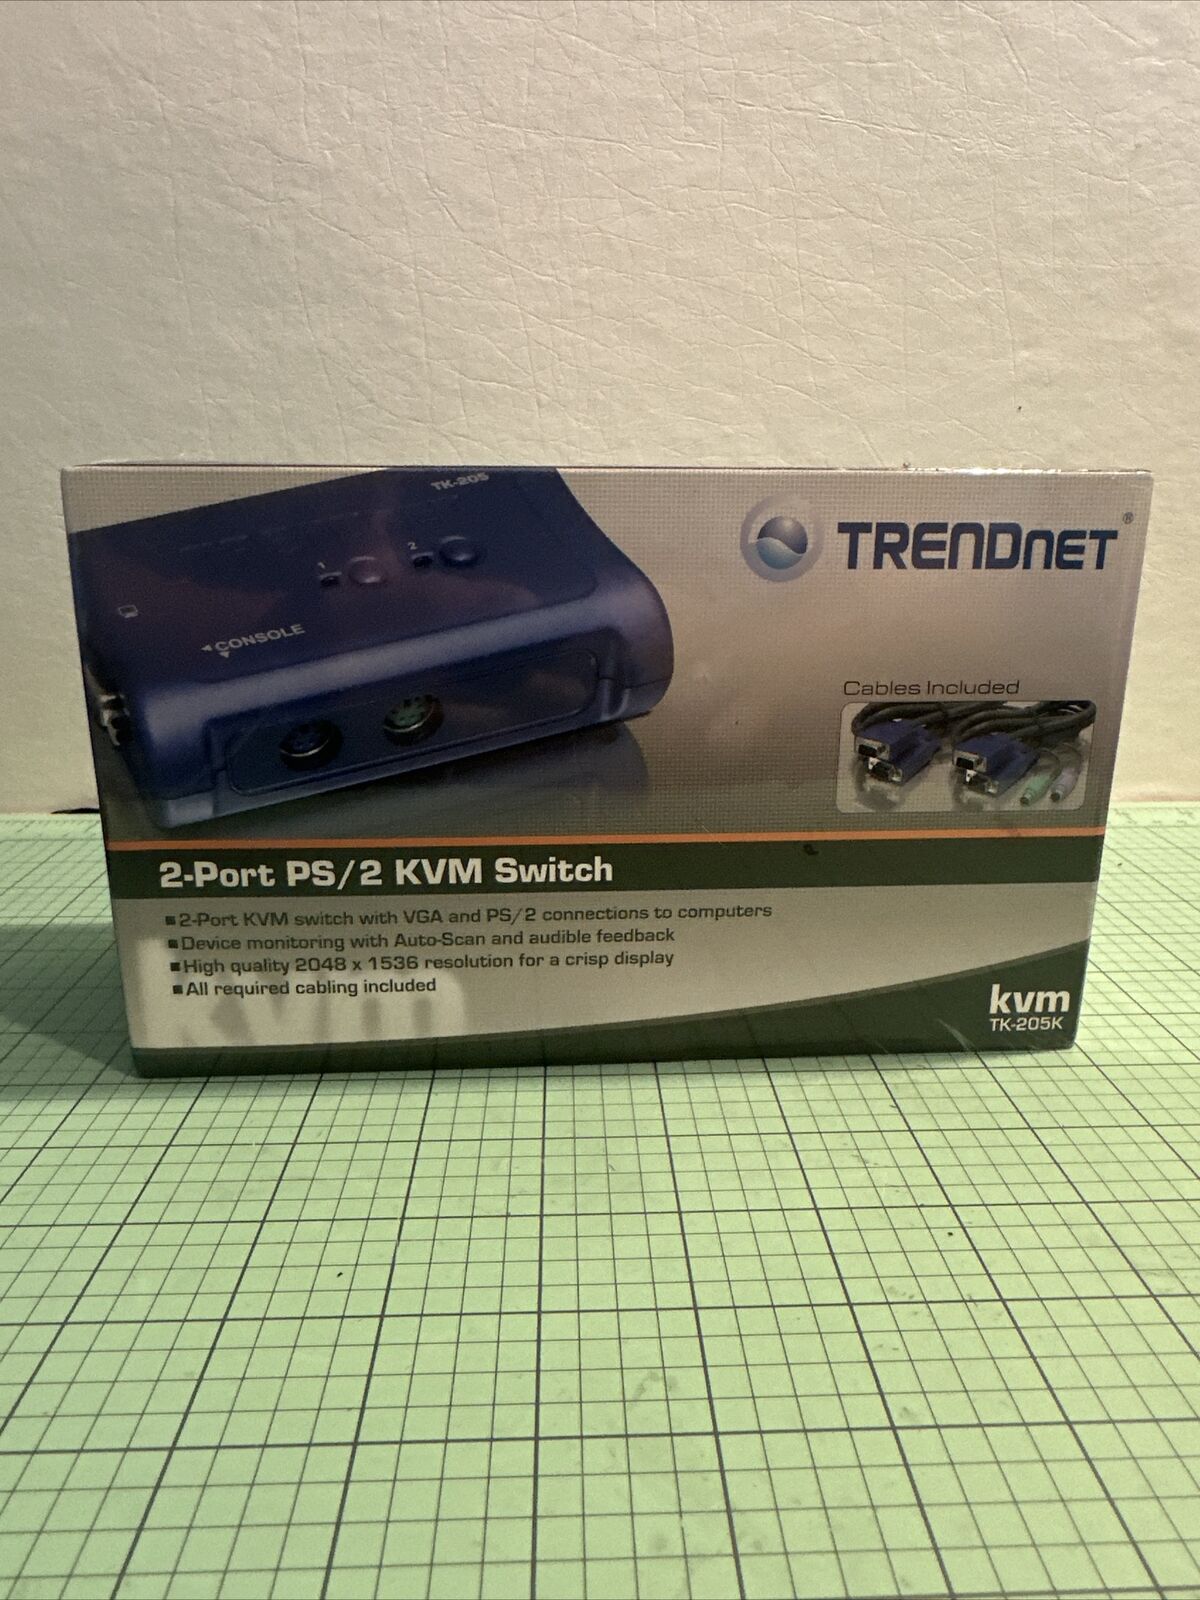 TRENDnet, KVM TK-205K 2 Port PS/2 KVM Switch Kit. NEW BS3